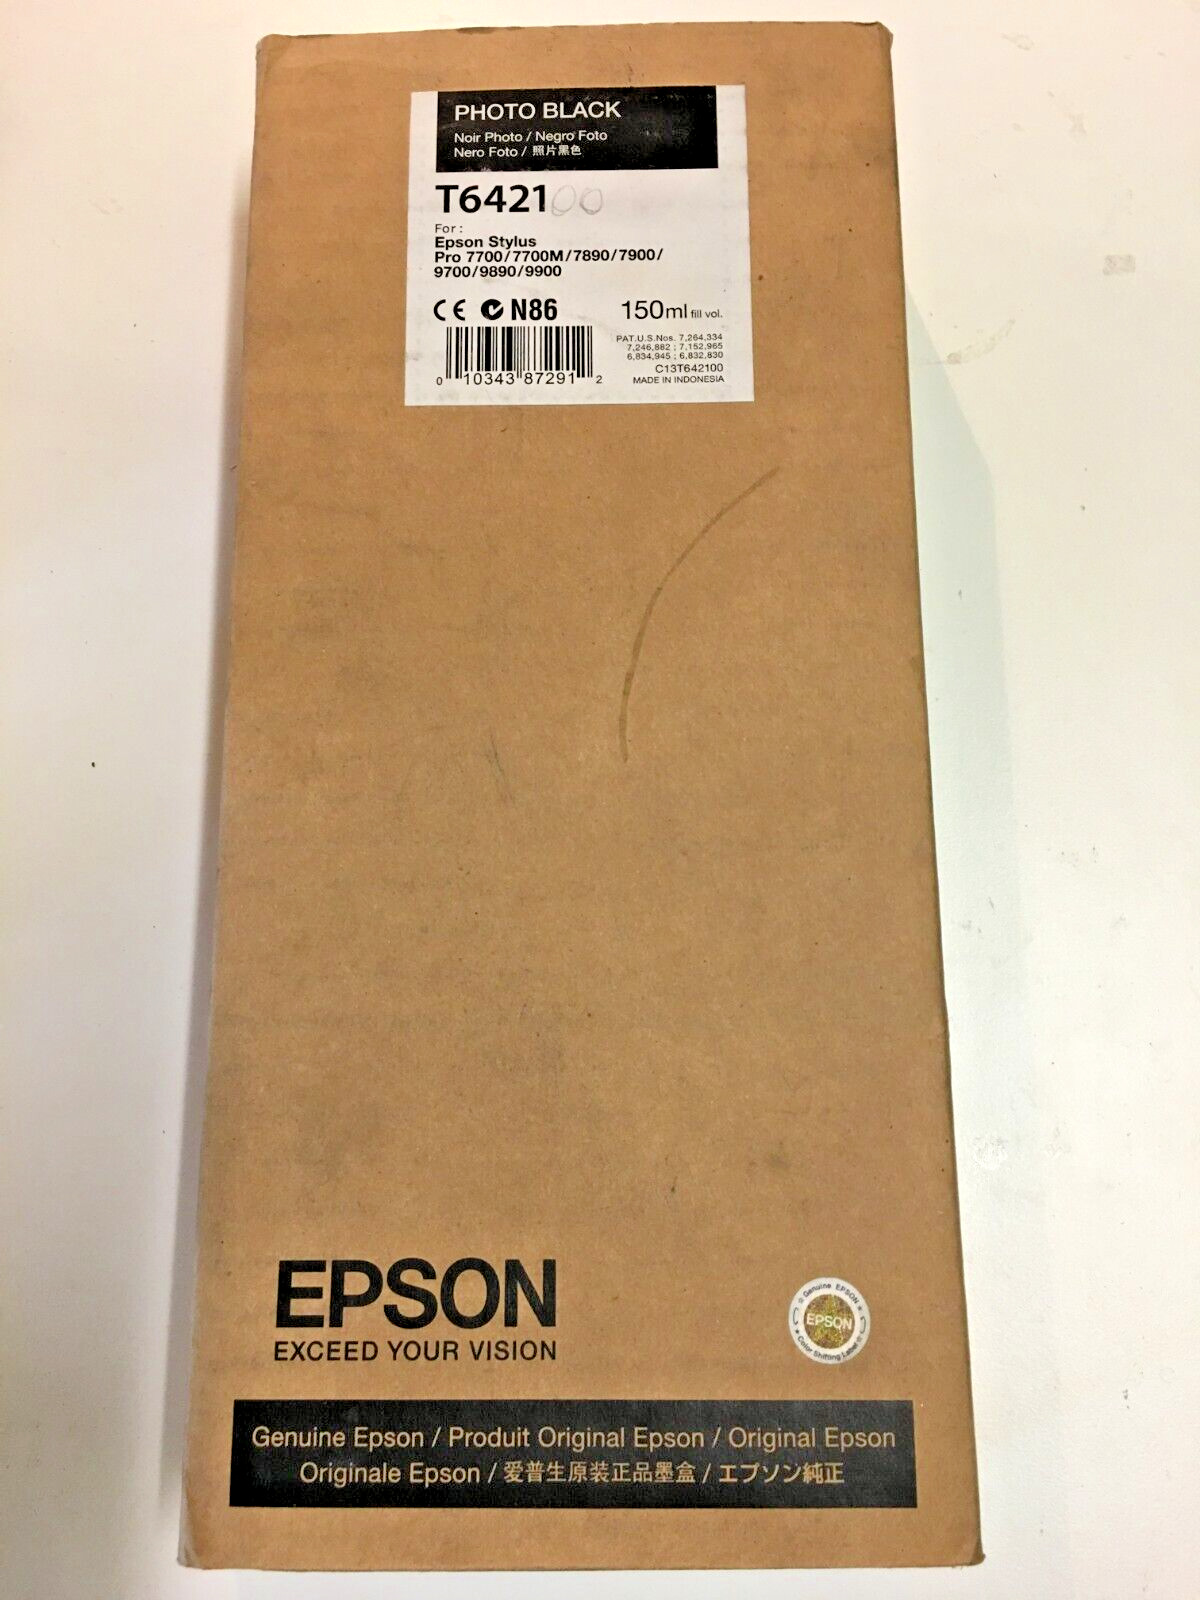 Genuine Epson OEM Ink-EXPIRED-T6421-Photo Black-150 ml-SEALED NEW